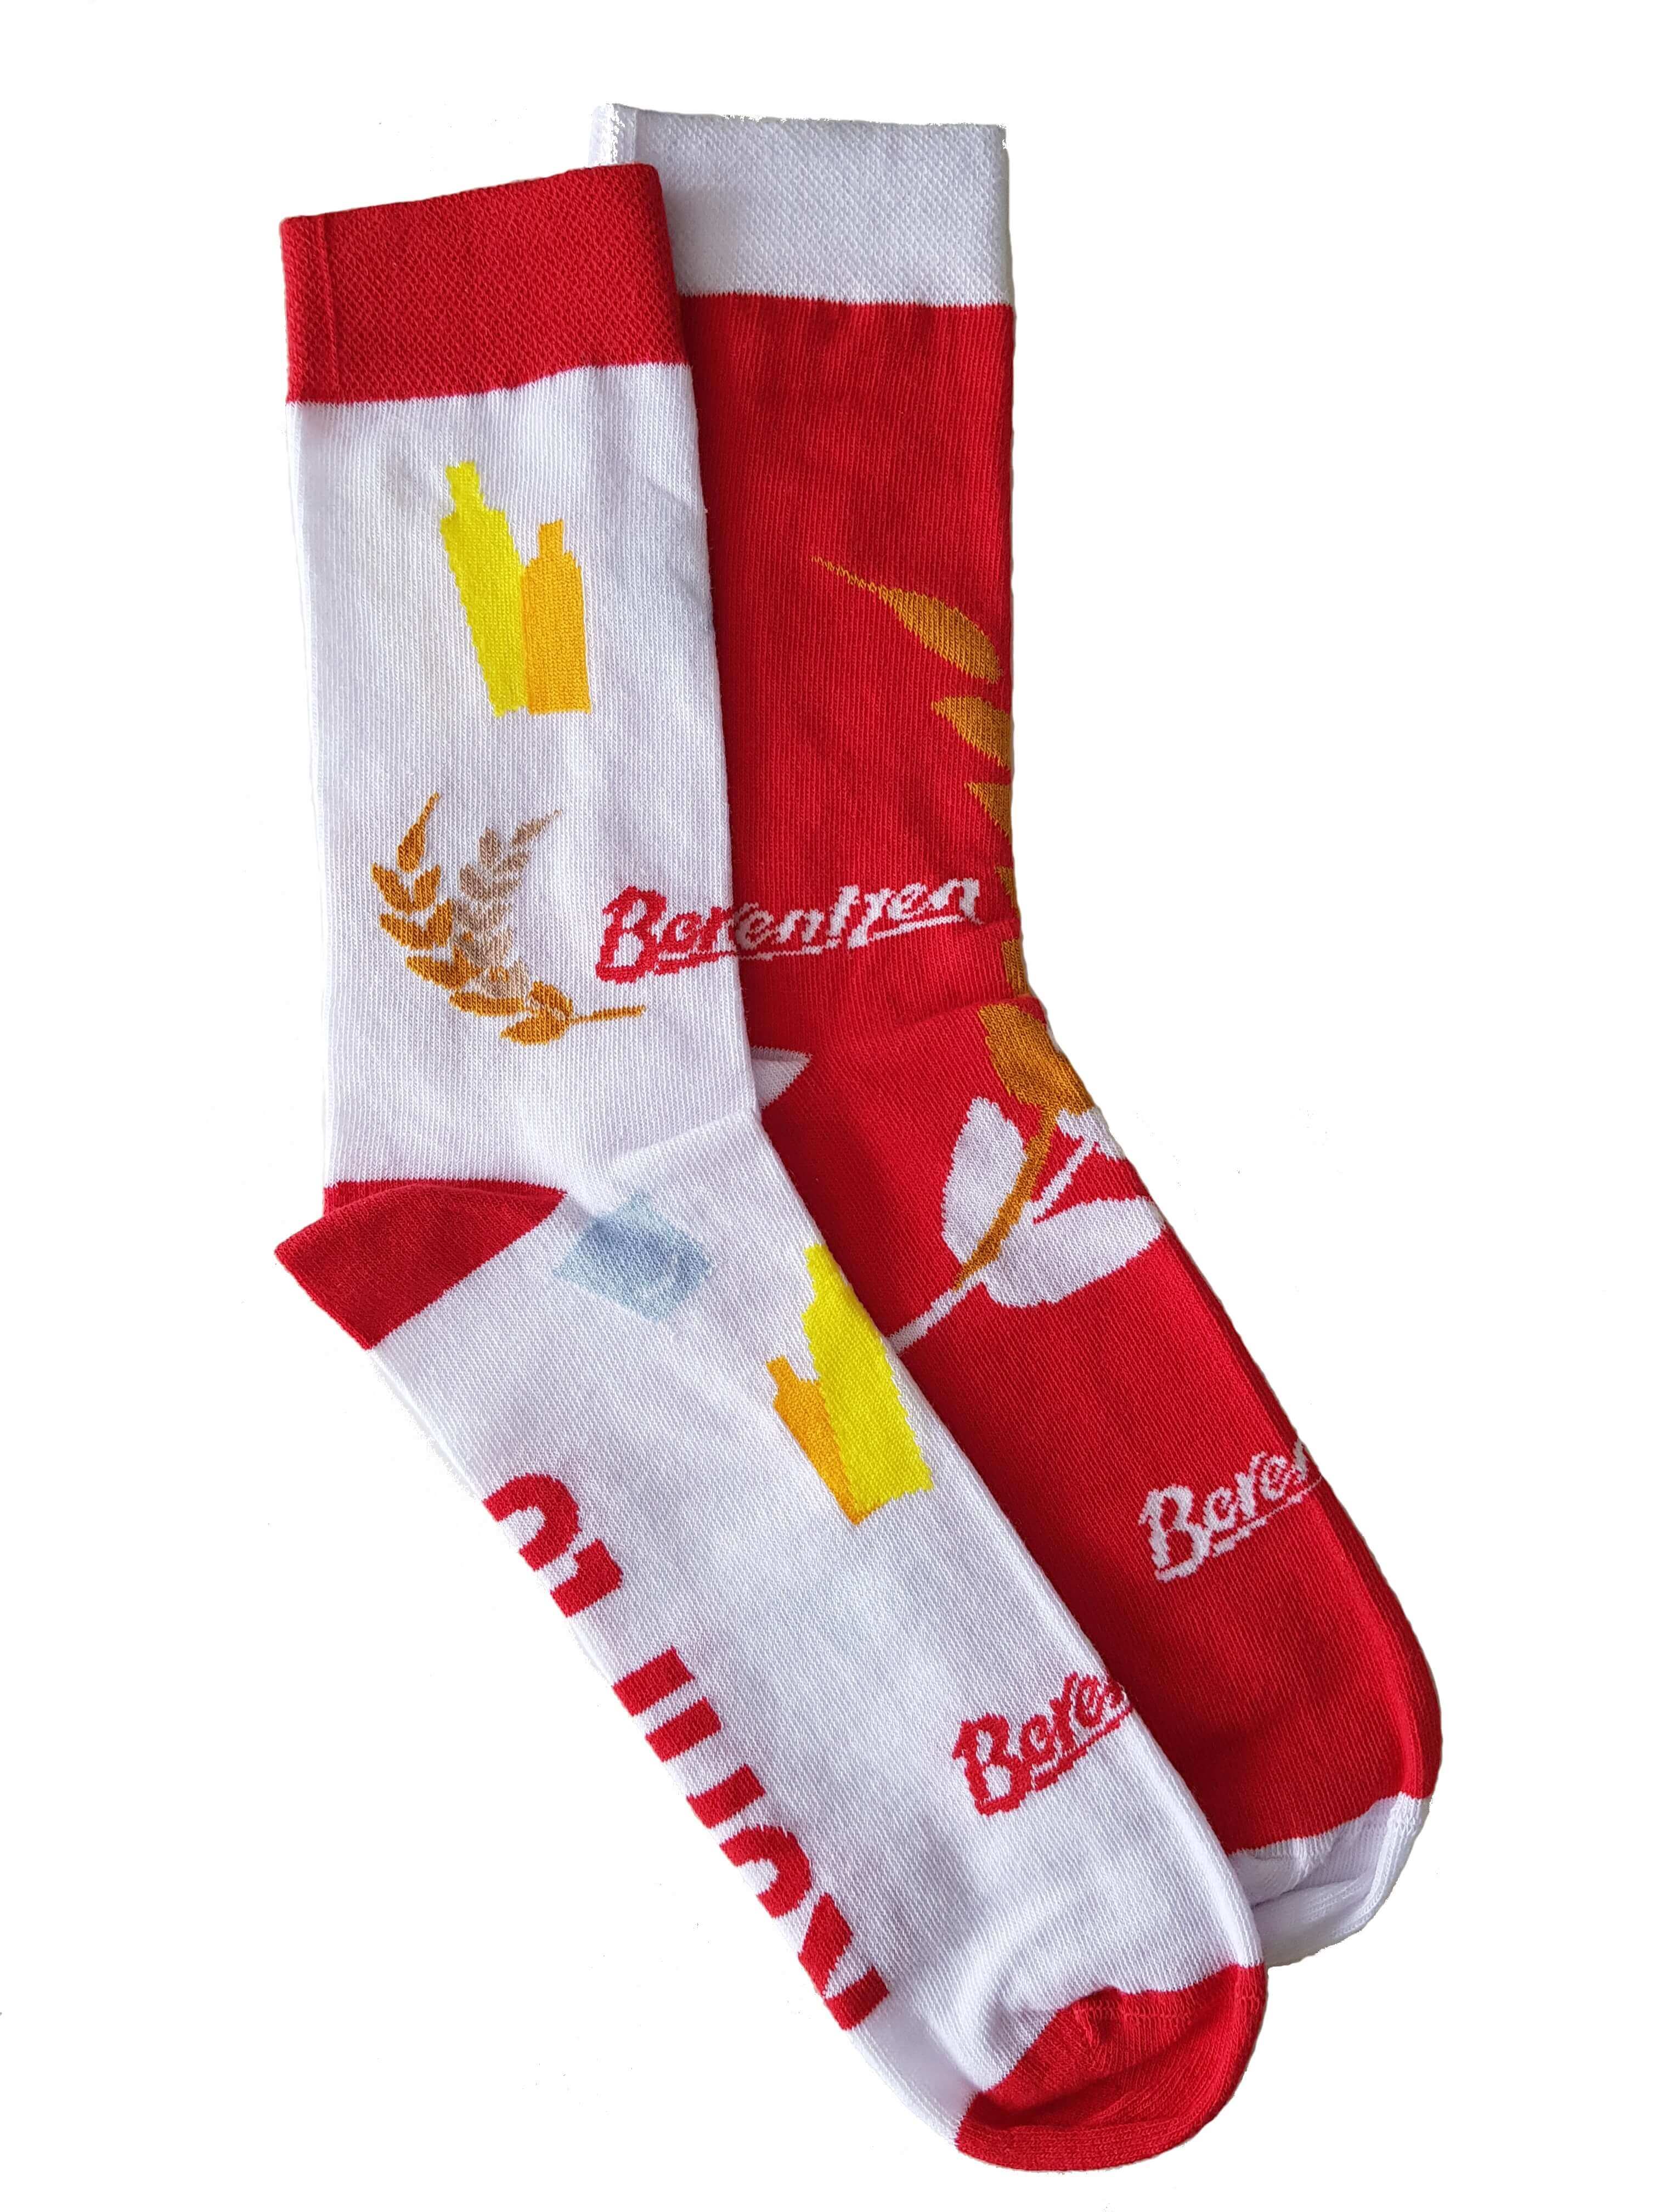 Weiss-Rote Berentzen Socken, Aufdruck mit Berentzen Logo, Goldenen Weizenkörnern und Schriftzug auf der Unterseite: Korn to be wild